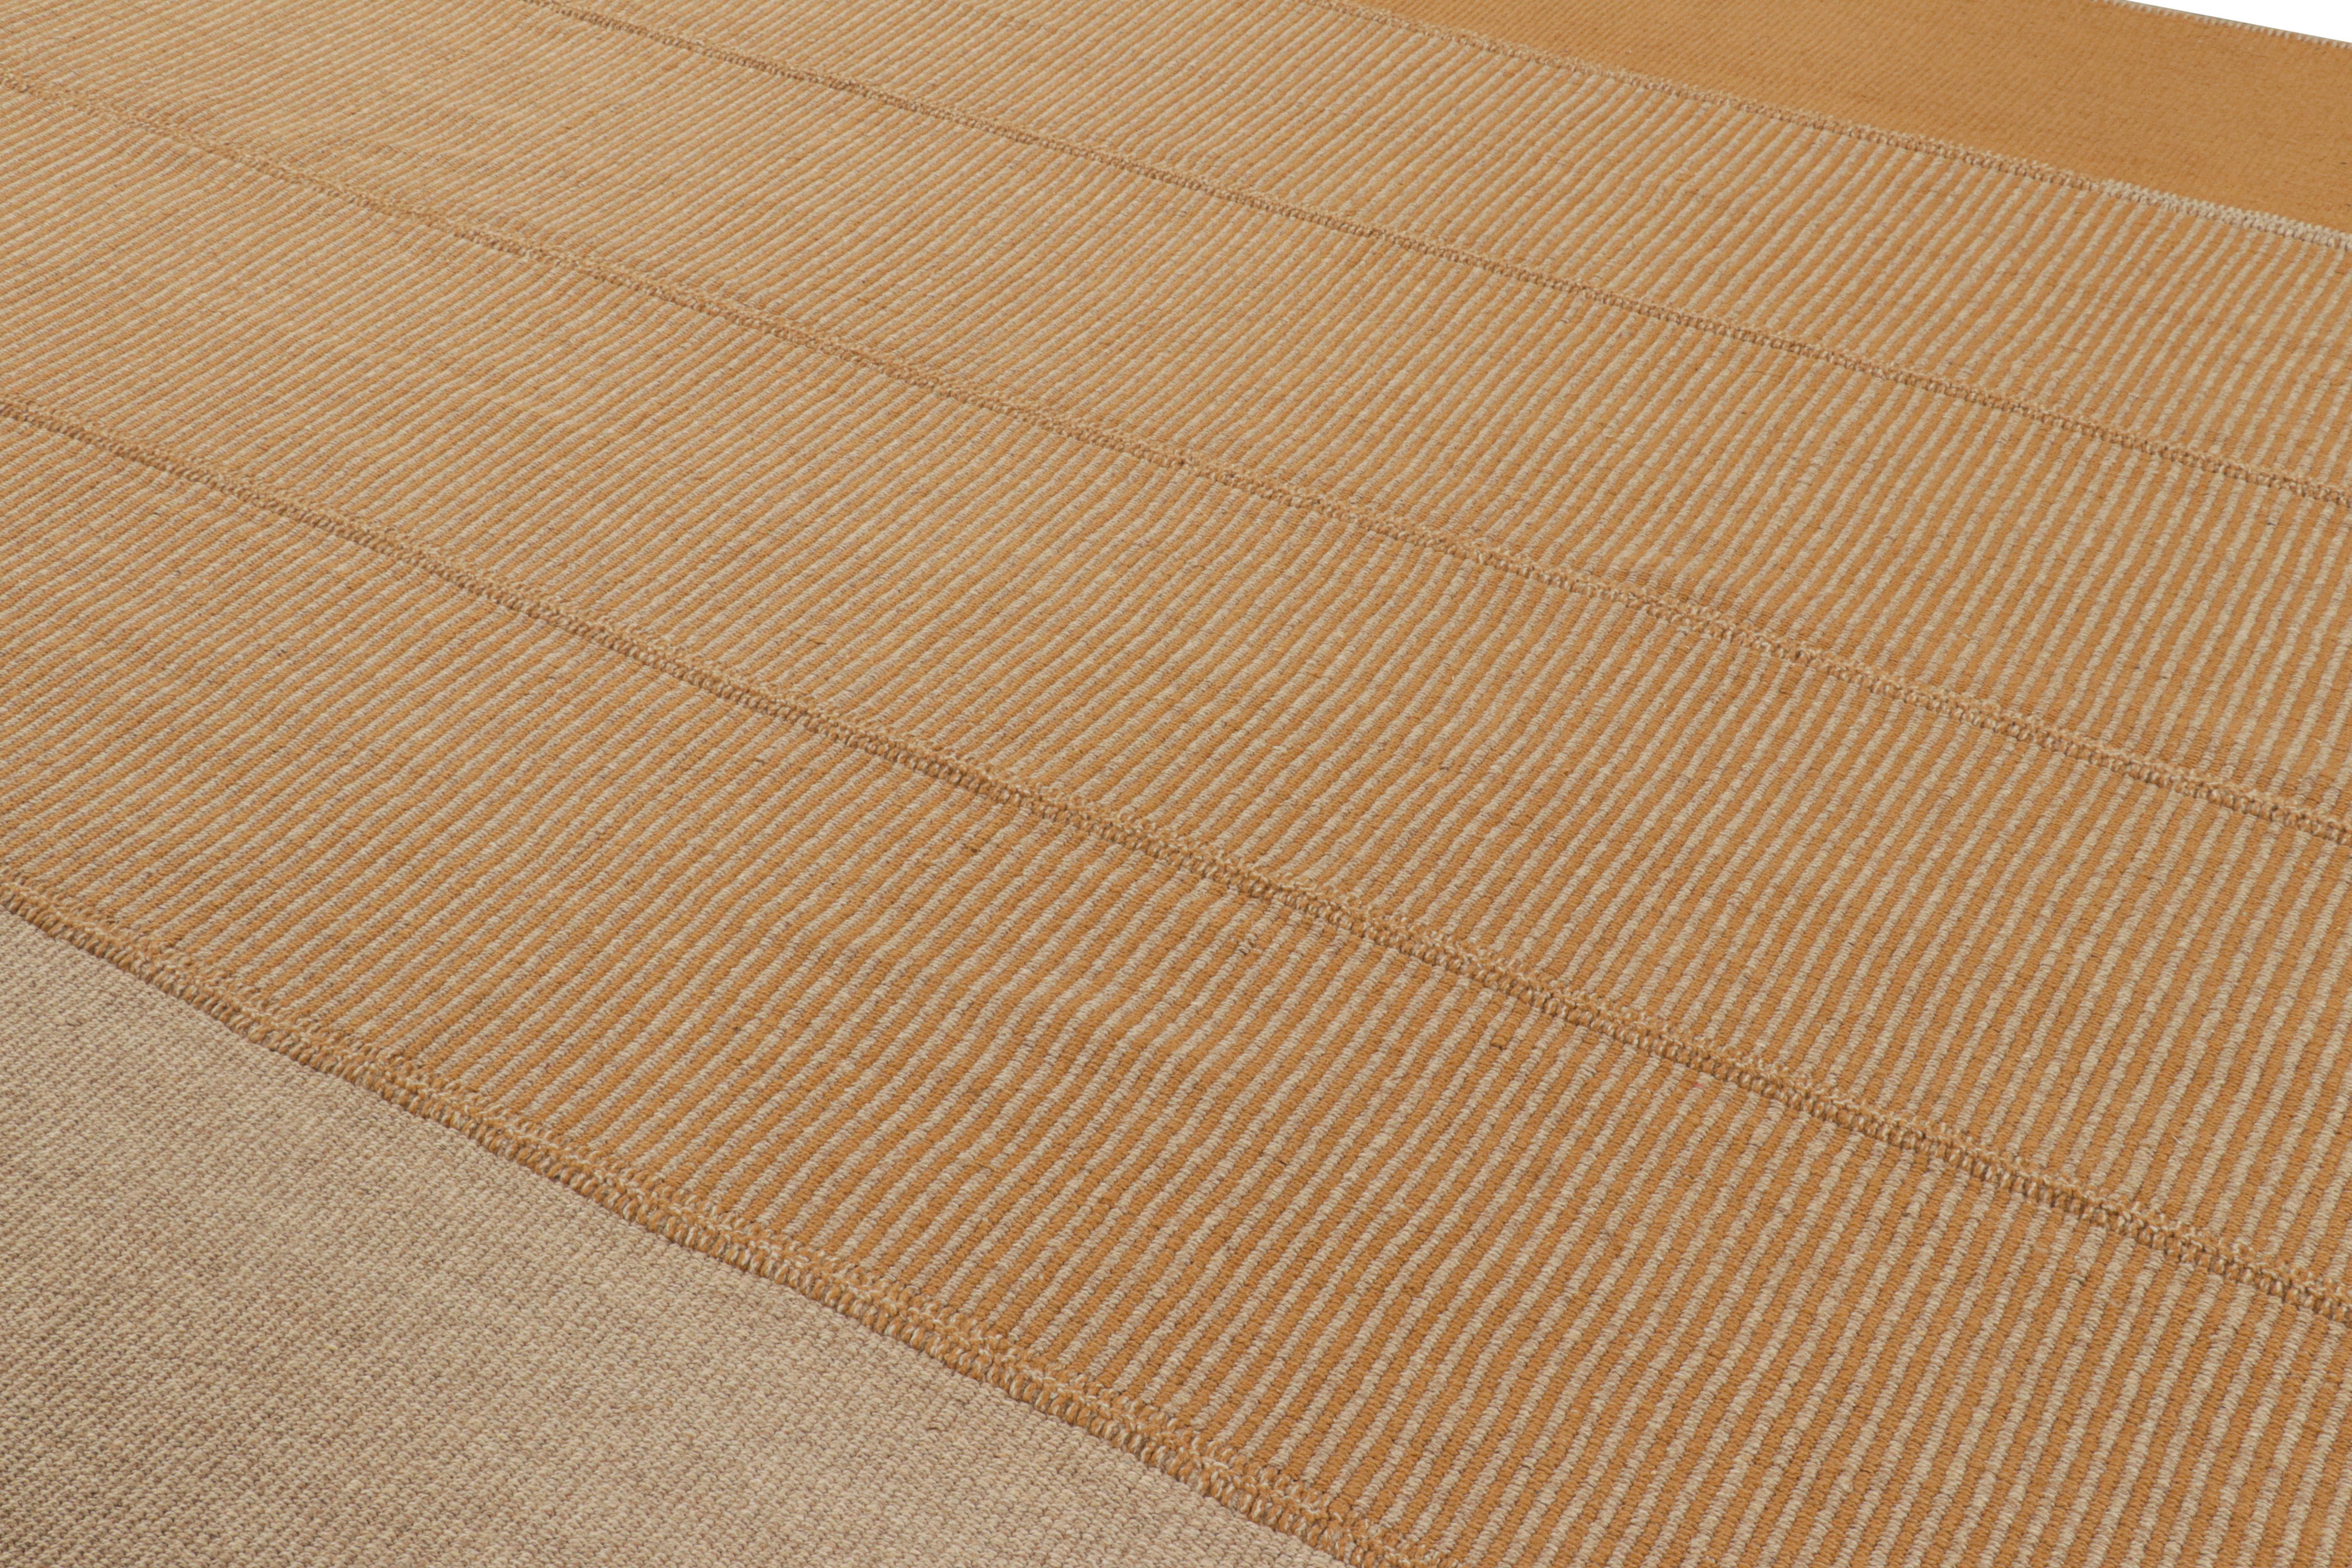 Handgewebte Wolle, ein 10x14-Kilim-Design aus einer originellen neuen zeitgenössischen Flachgewebe-Kollektion von Rug & Kilim.

Über das Design: 

Diese liebevoll Rez Kilims